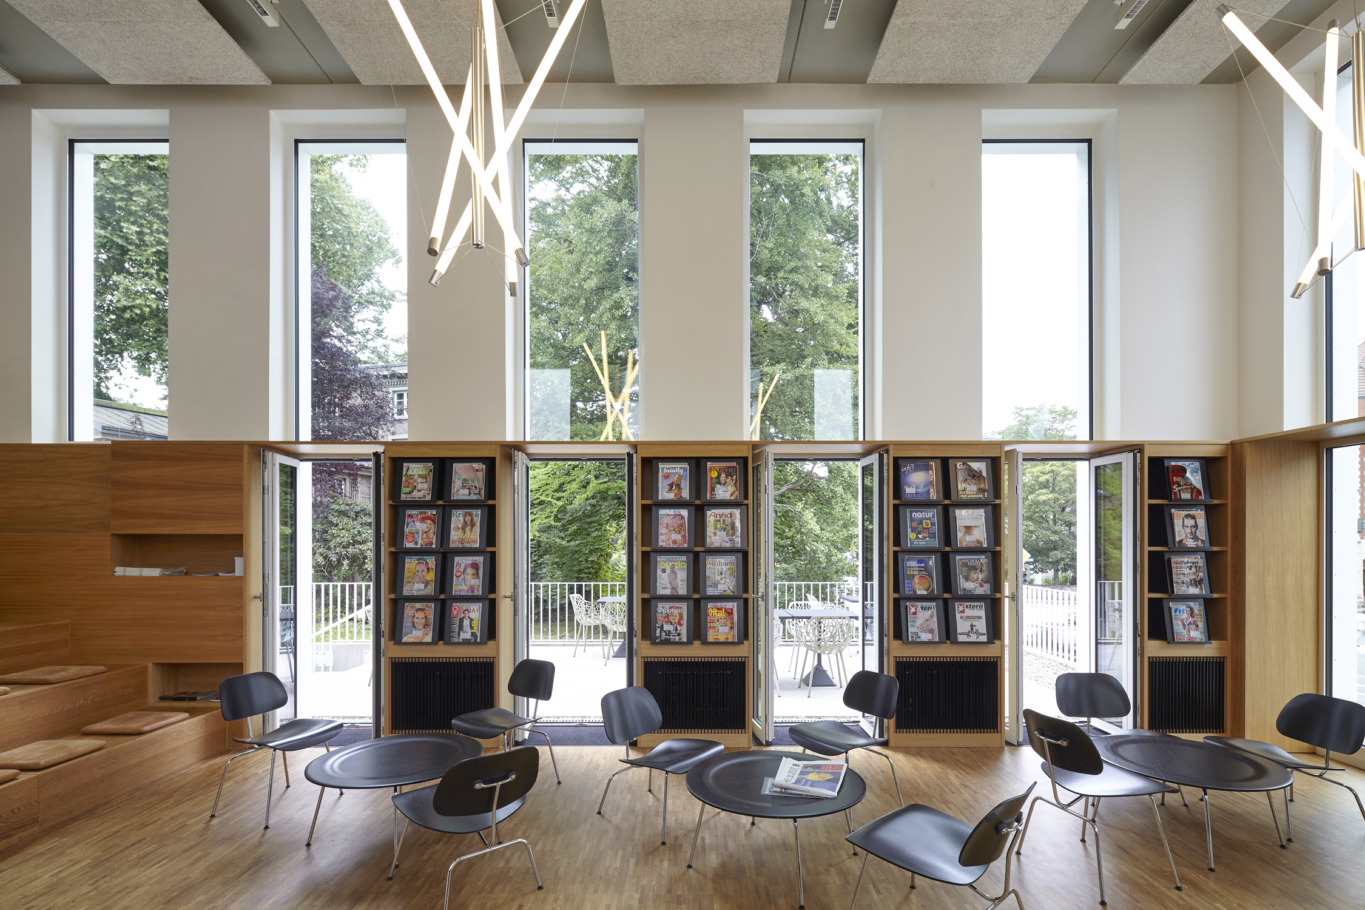 Lioba Schneider Interieurfotografie: Umbau der Bibliothek Witten durch leistungsphase architekten. Blick in den hellen Lesesaal.